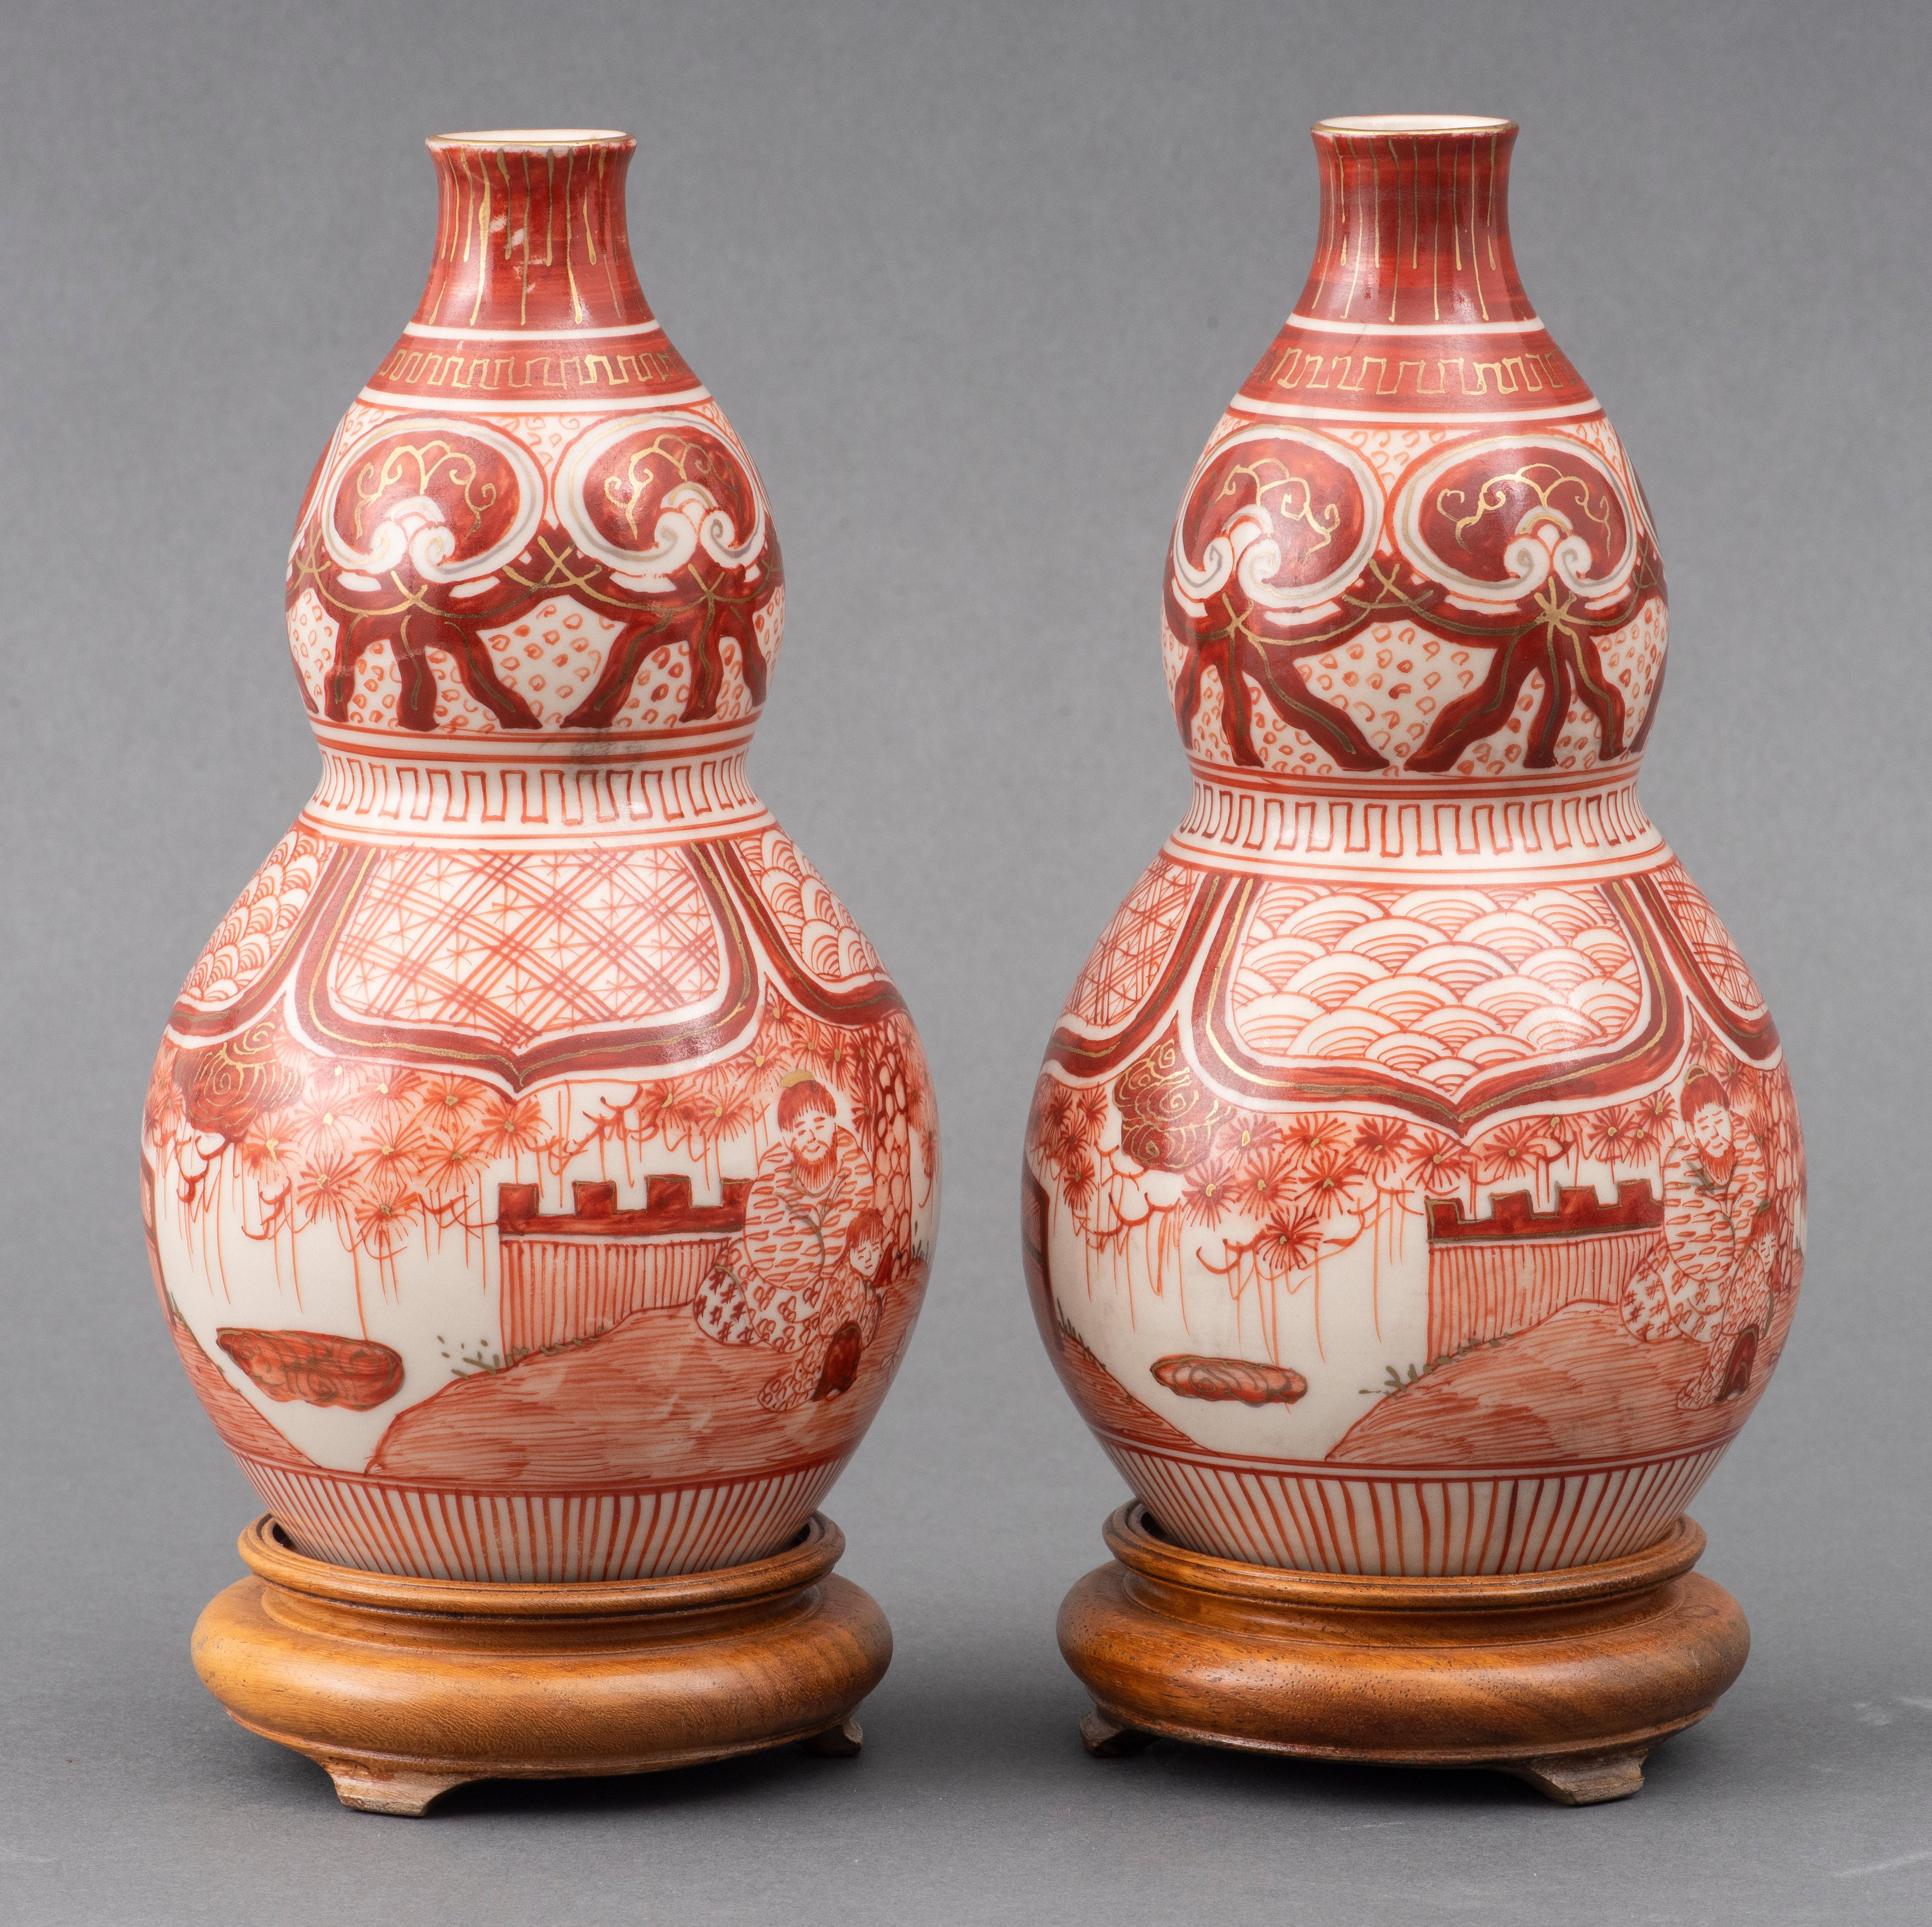 Paar eisenrot verzierte Doppelkürbiskrüge, japanische Kutani-Ware des späten 19. Jahrhunderts, fein verziert mit Figuren in einer Gartenlandschaft, vergoldeter Rand und gemalte Fuku-Marke auf dem Boden, jeweils mit Holzständer. 
Maße: 8